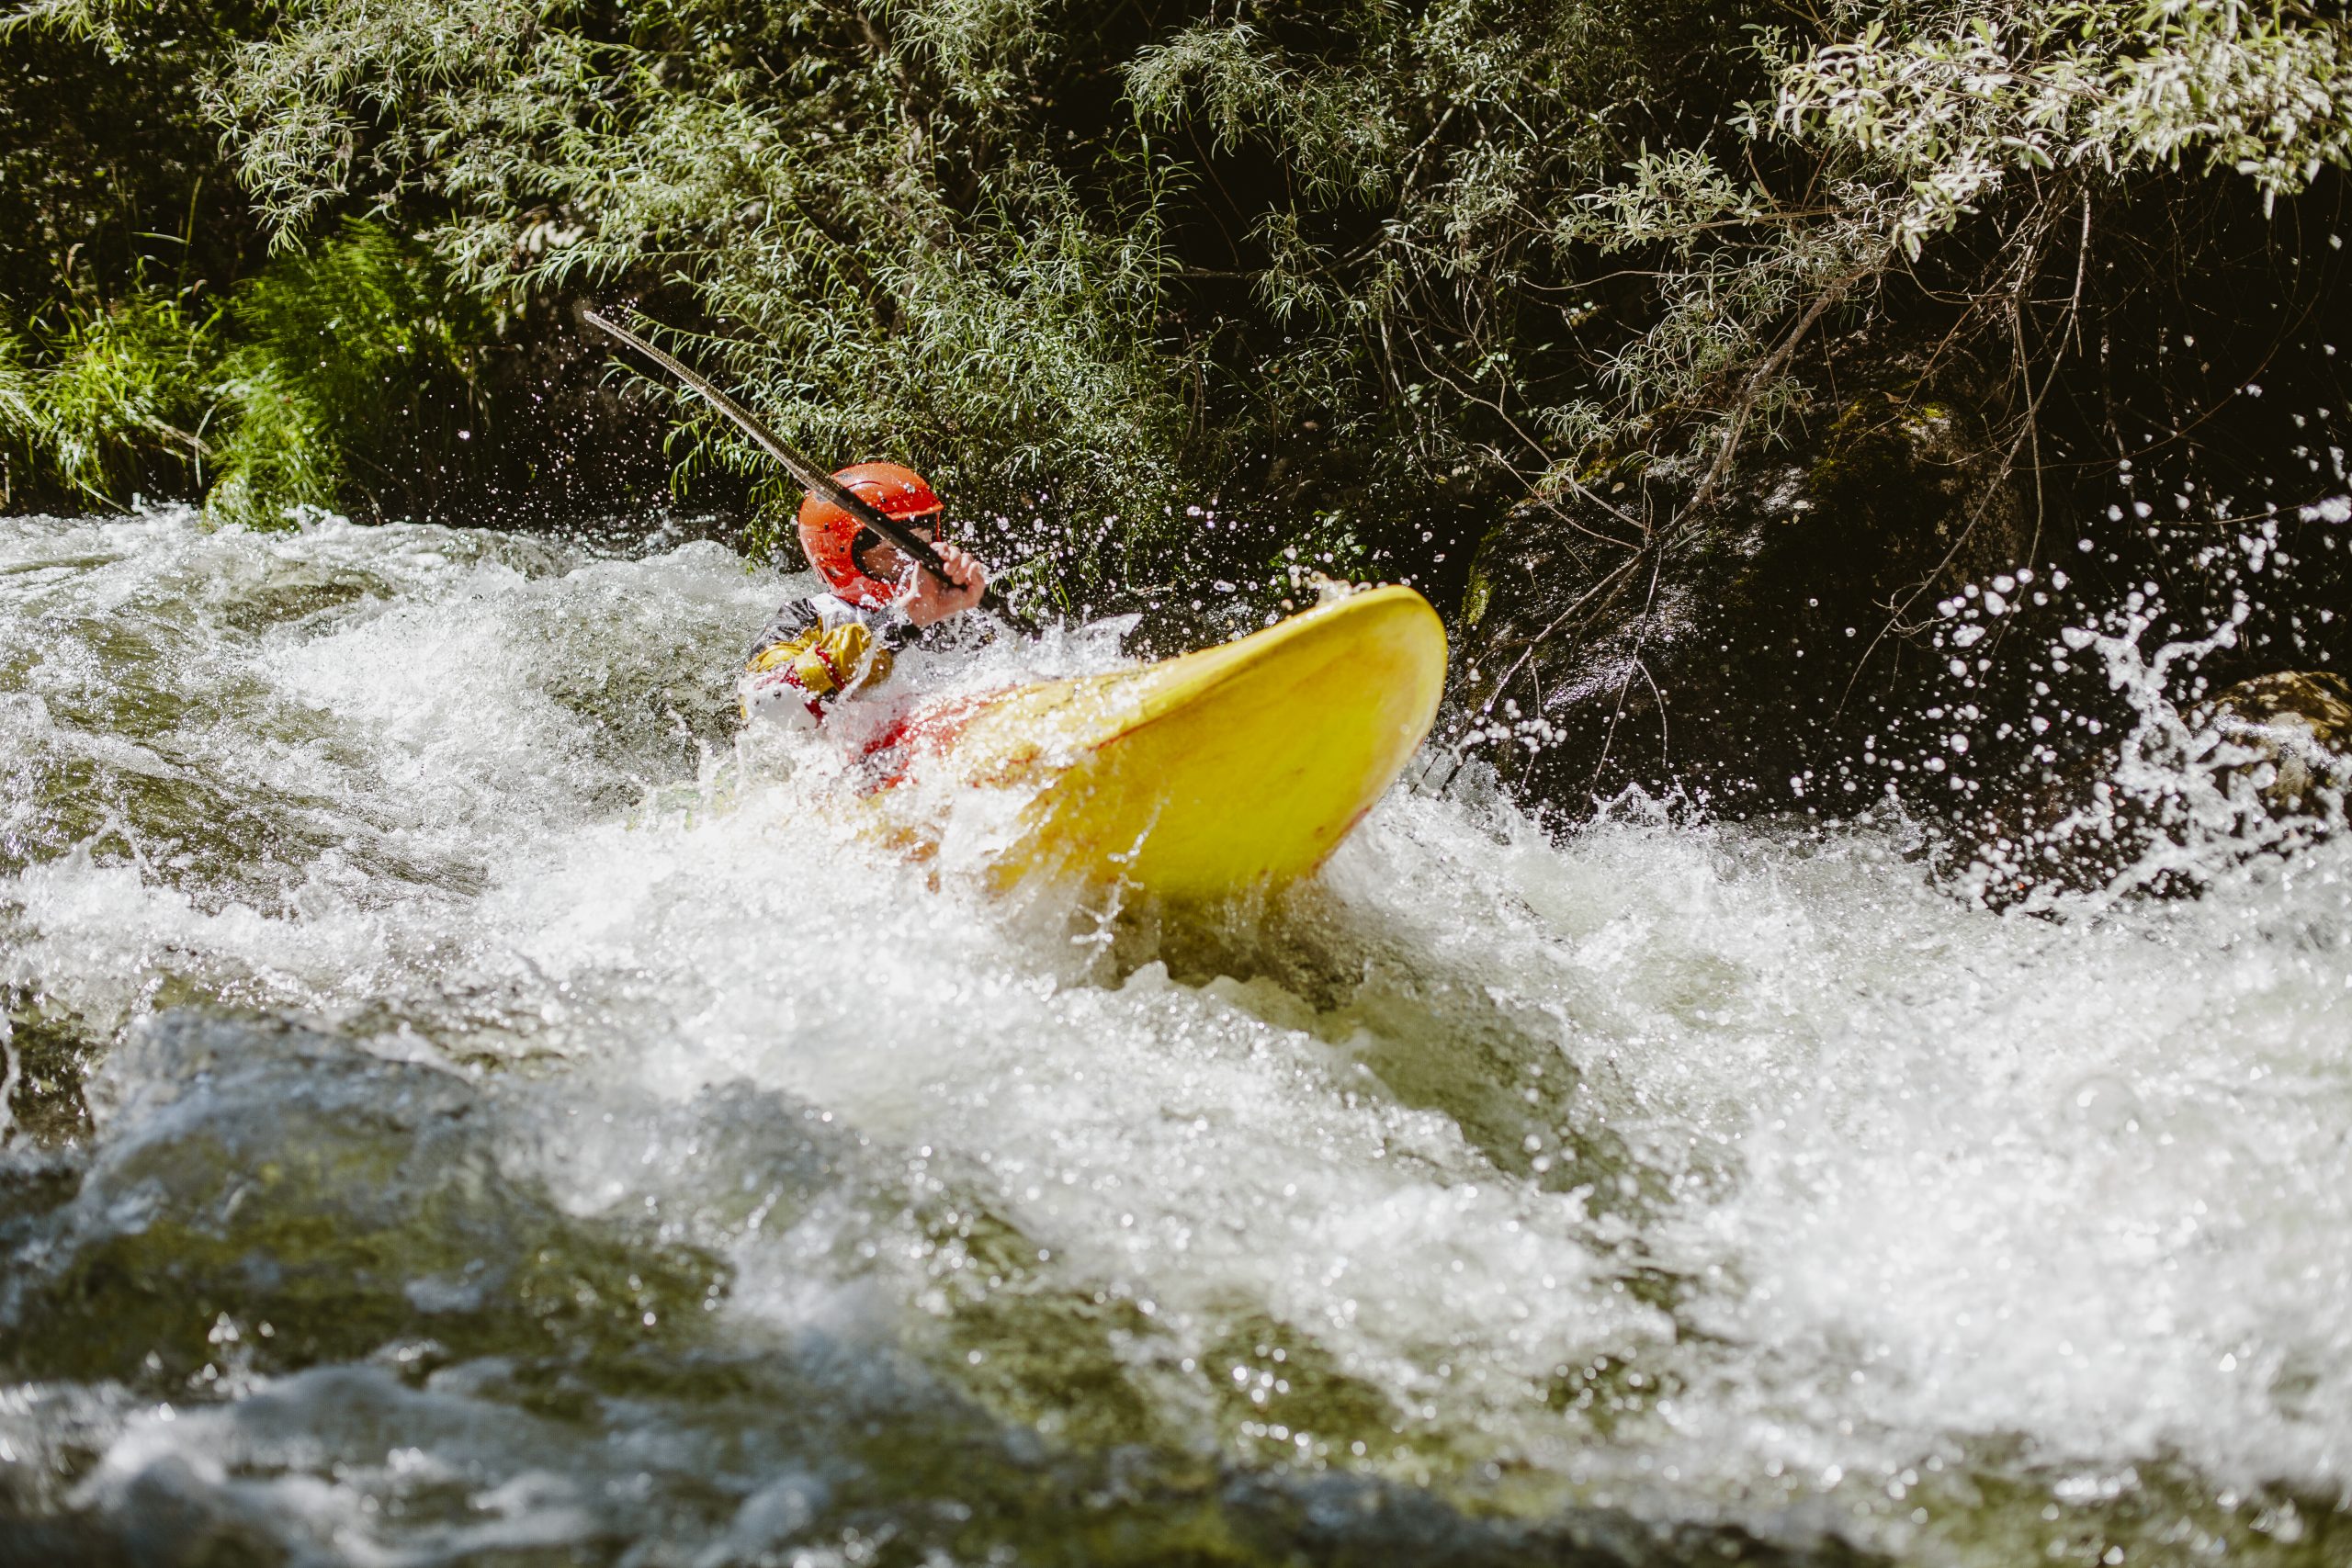 Km lanzado. Río Piqueras. Descenso en piragua. XX competición de Kayak extremo. 24 de julio de 2022.
© Juan San Sebastián. Todos los derechos reservados.